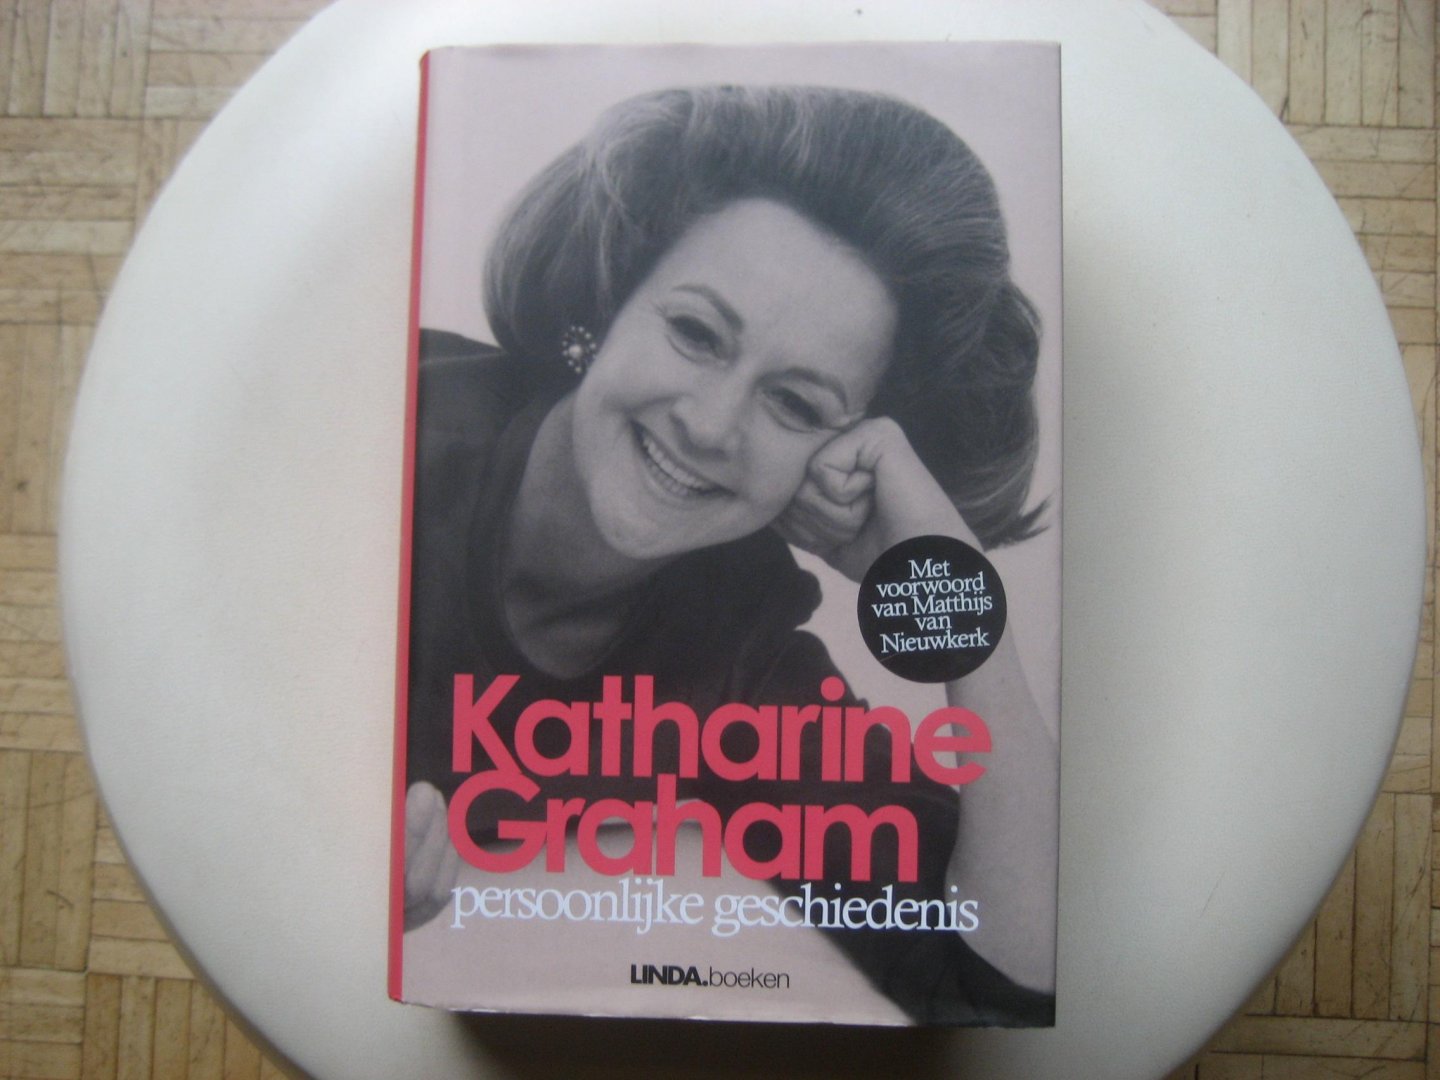 Katharine Graham - Persoonlijke geschiedenis / Autobiografie van de vrouw achter de Watergate-onthullingen